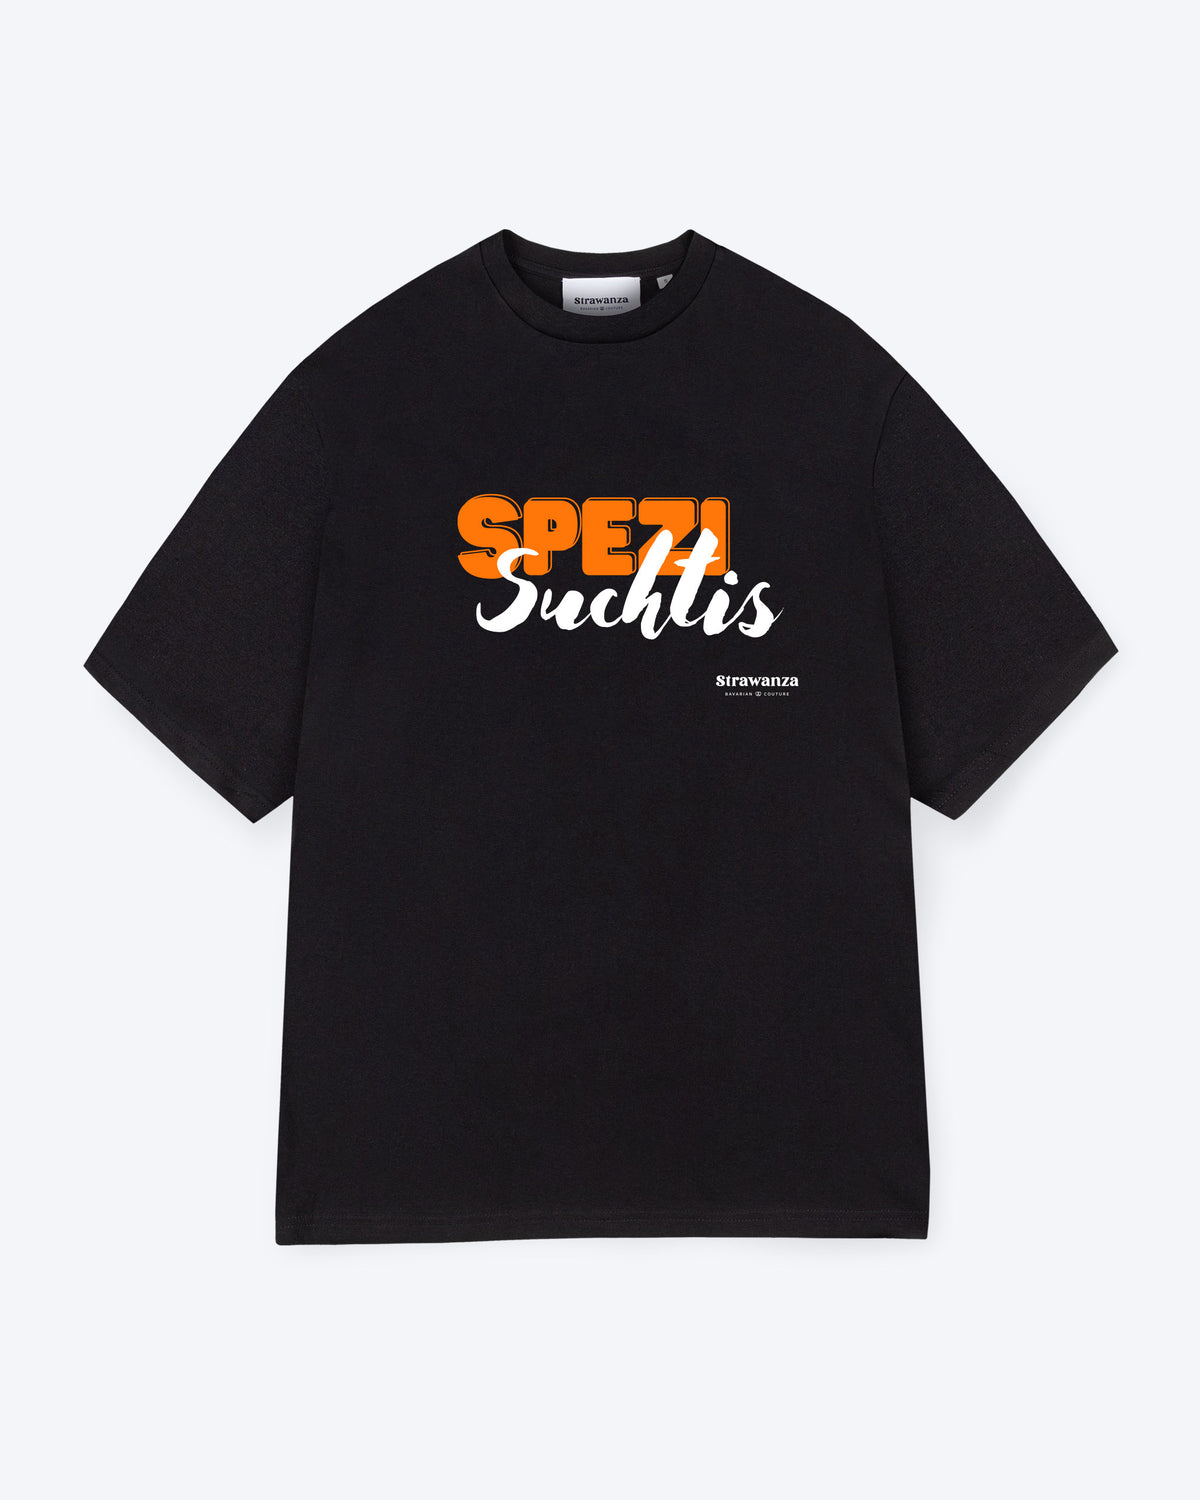 Spezi Suchtis T-Shirt